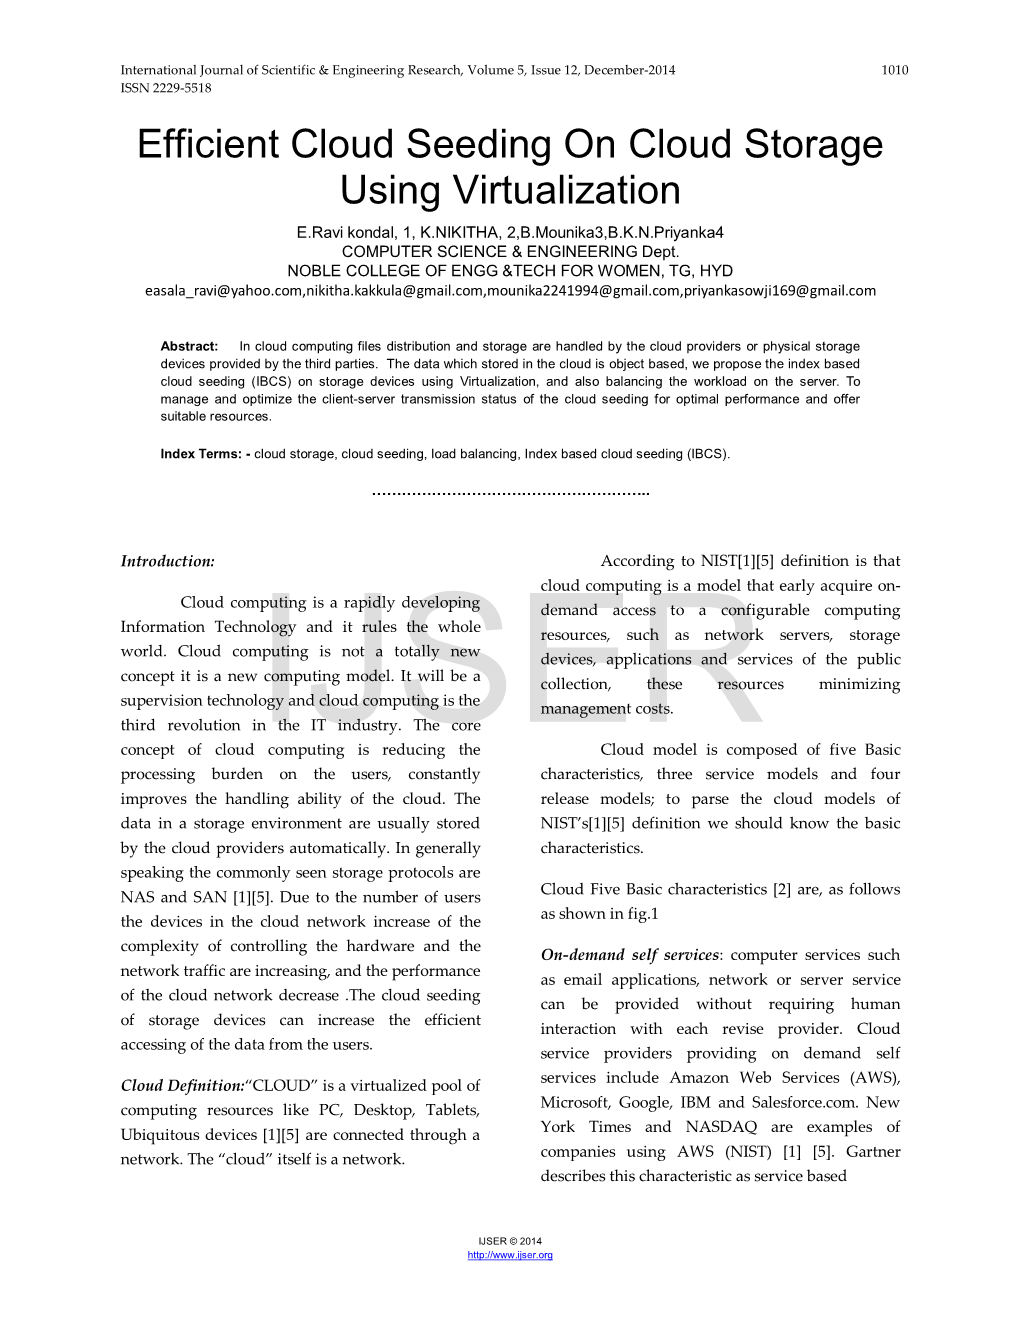 Efficient Cloud Seeding on Cloud Storage Using Virtualization E.Ravi Kondal, 1, K.NIKITHA, 2,B.Mounika3,B.K.N.Priyanka4 COMPUTER SCIENCE & ENGINEERING Dept